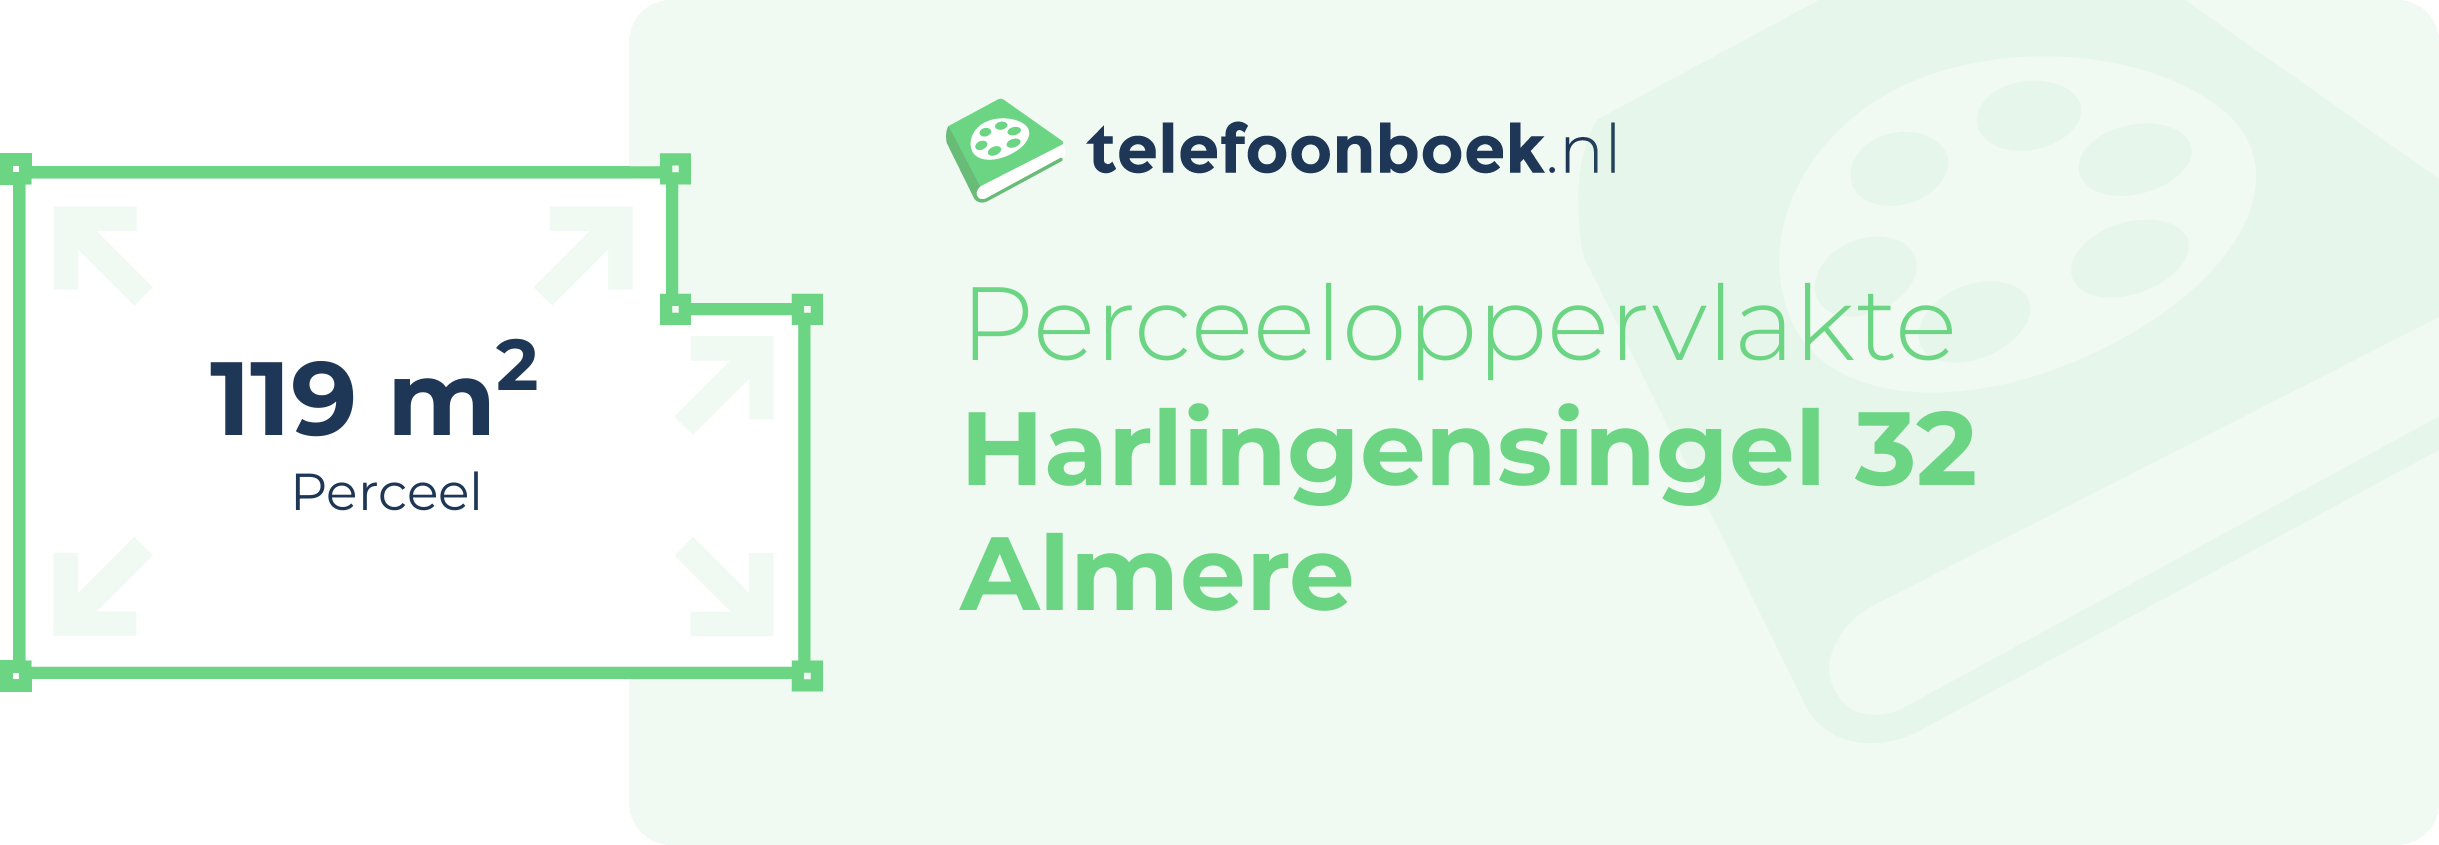 Perceeloppervlakte Harlingensingel 32 Almere